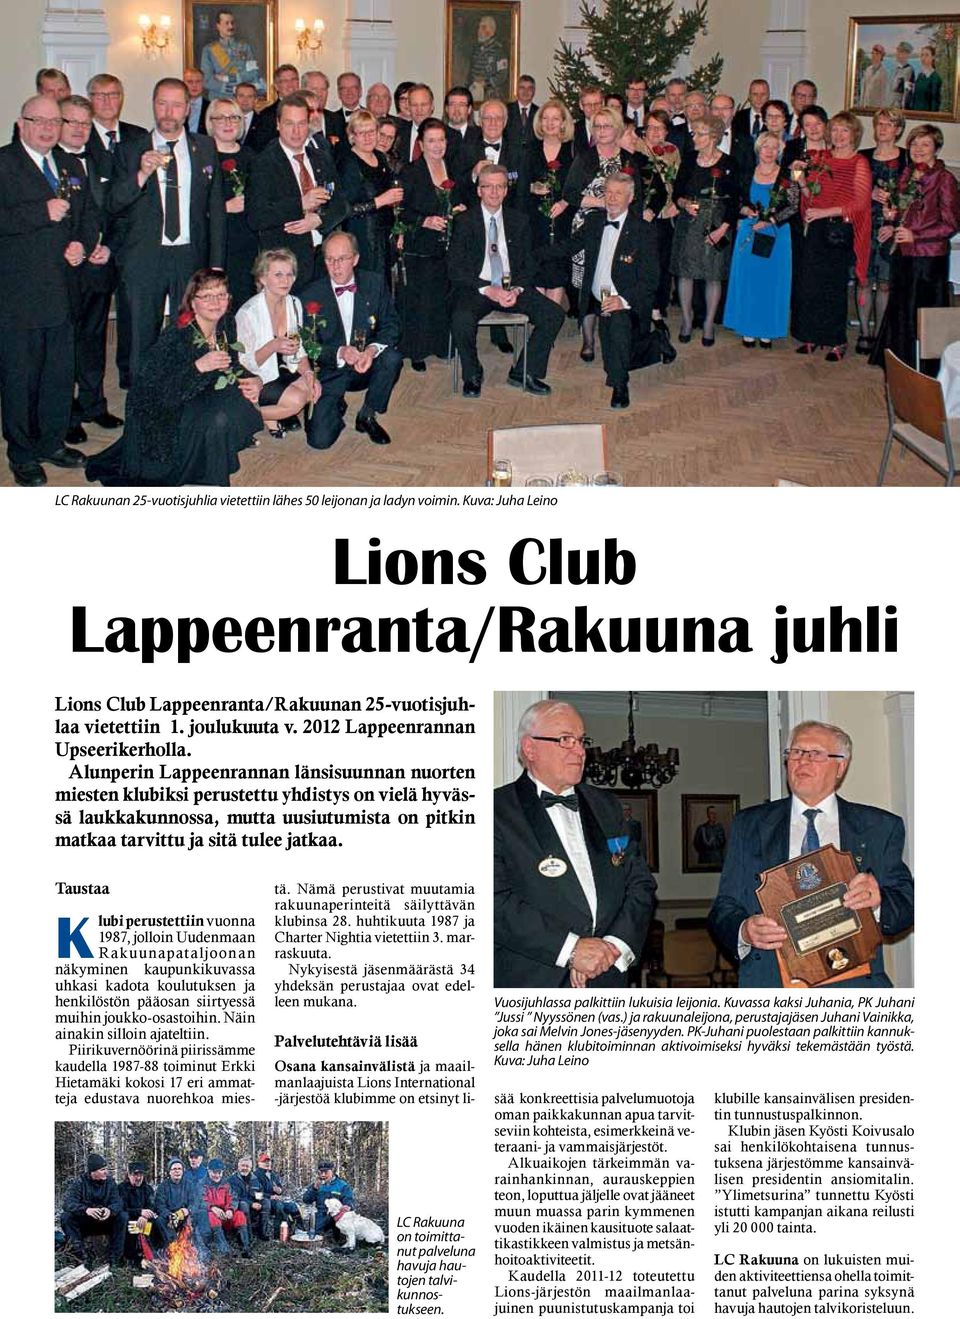 Alunperin Lappeenrannan länsisuunnan nuorten miesten klubiksi perustettu yhdistys on vielä hyvässä laukkakunnossa, mutta uusiutumista on pitkin matkaa tarvittu ja sitä tulee jatkaa.